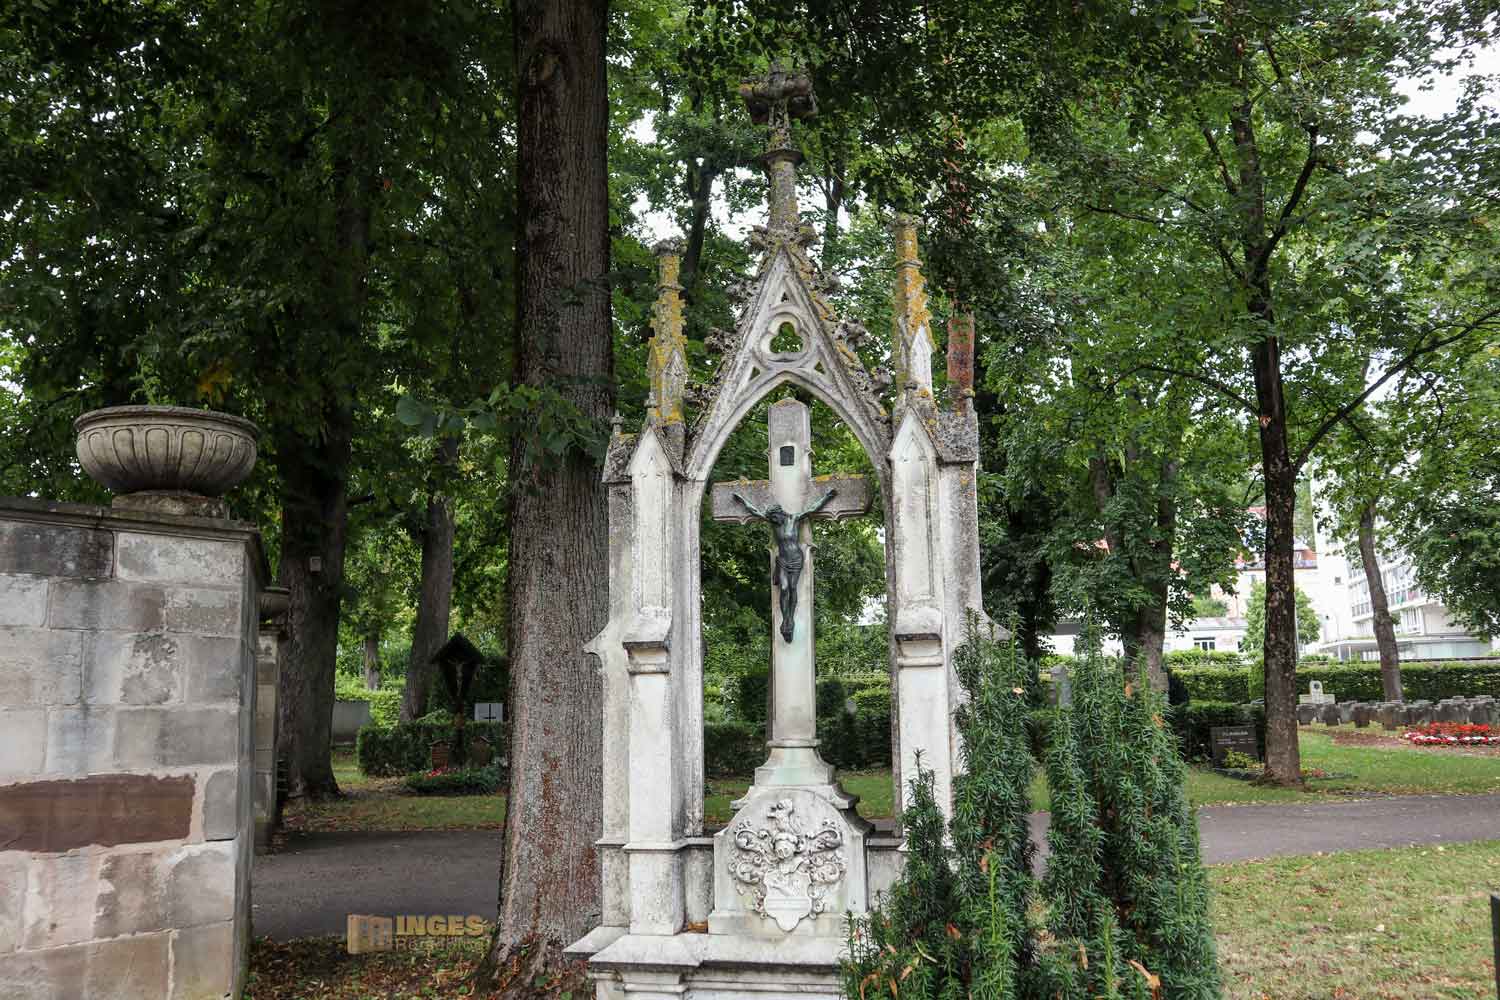 St. Leonhardsfriedhof in Schwäbisch Gmünd